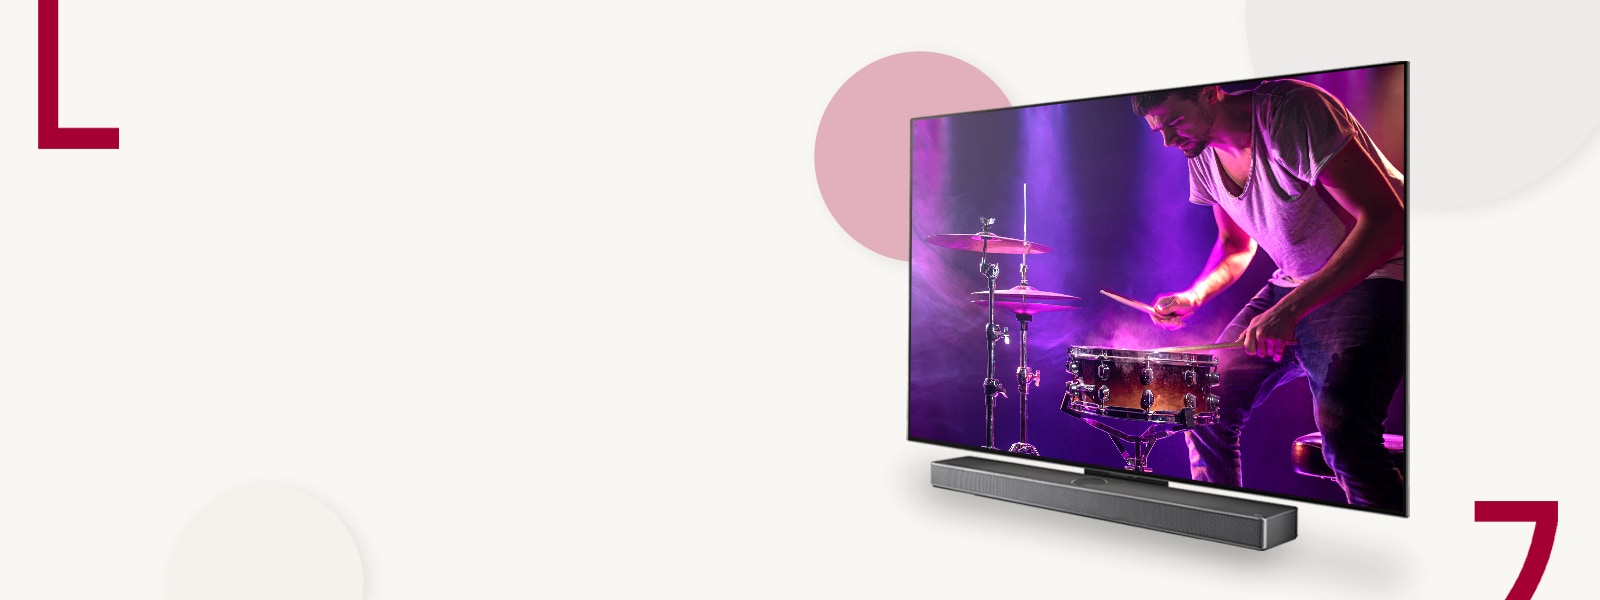 Slika televizora LG OLED C3 i zvučnika Soundbar na  kremastoj pozadini s krugovima u boji. Na zaslonu je muškarac koji svira bubnjeve. 